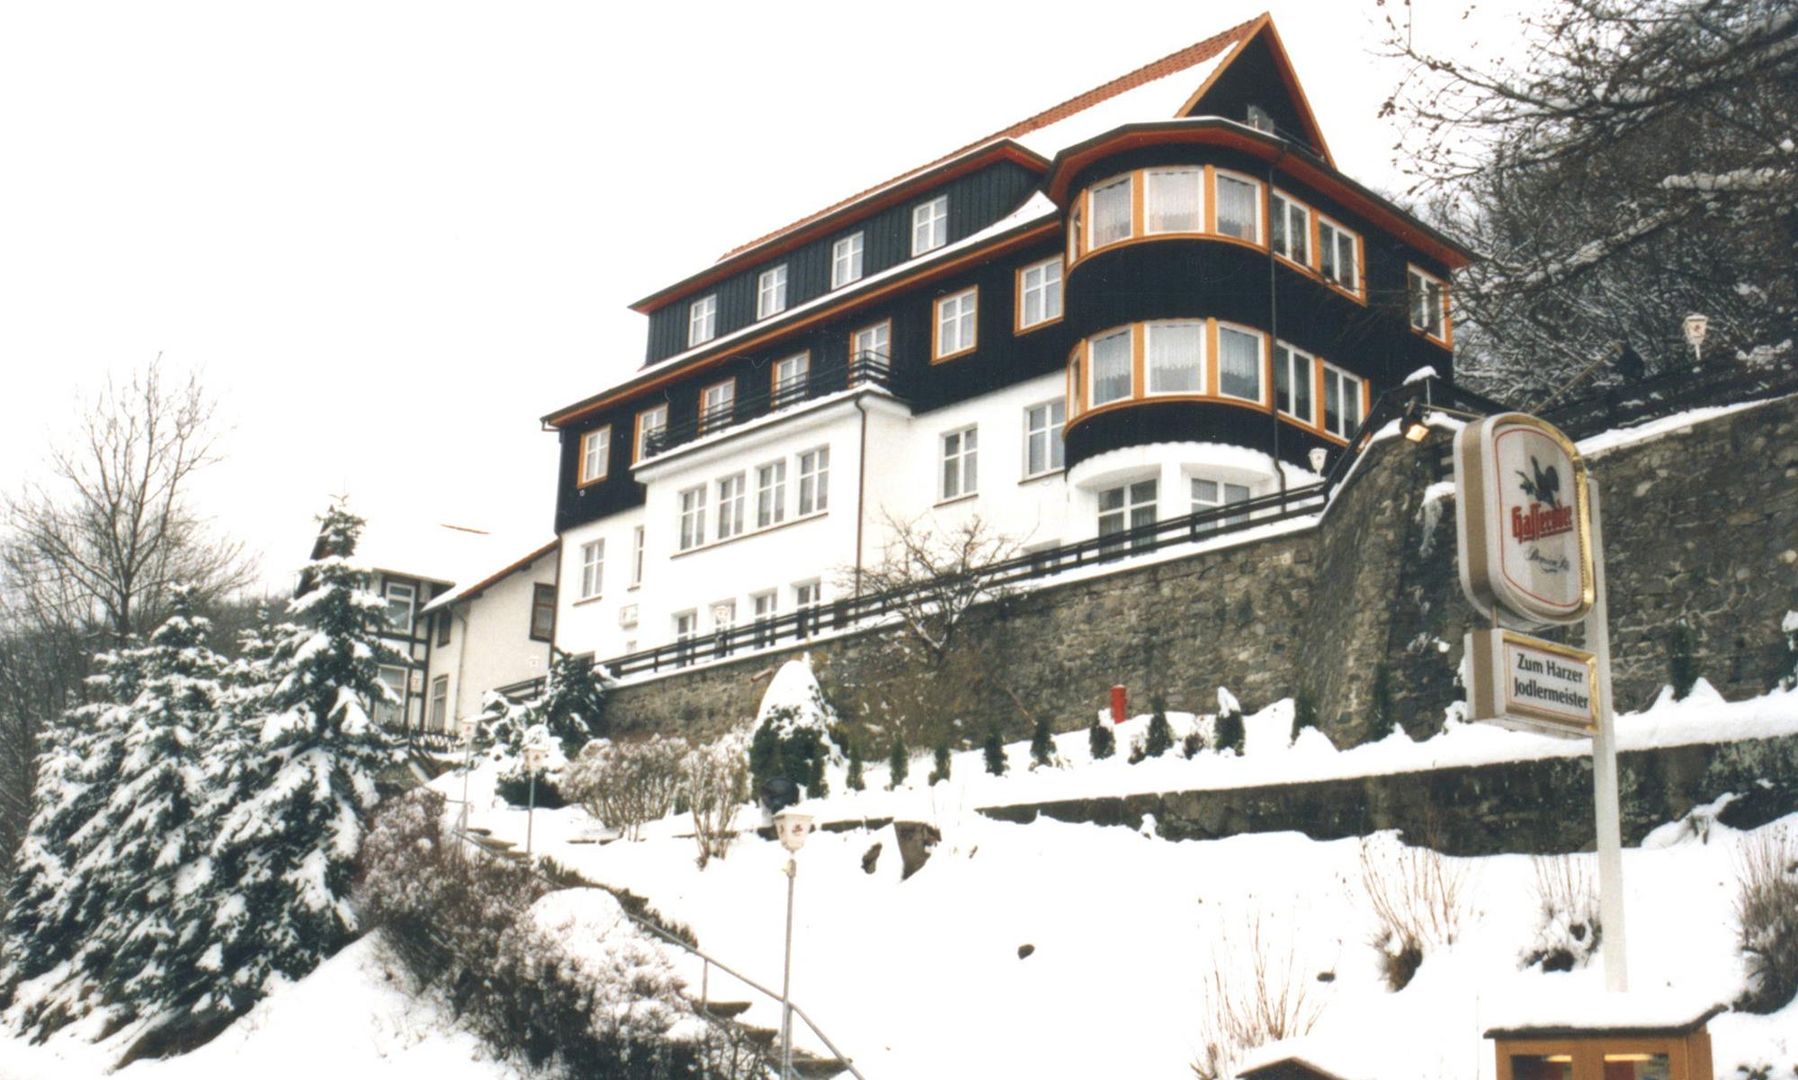 Goedkoop op skivakantie Harz ❄ Hotel Zum Harzer Jodlermeister